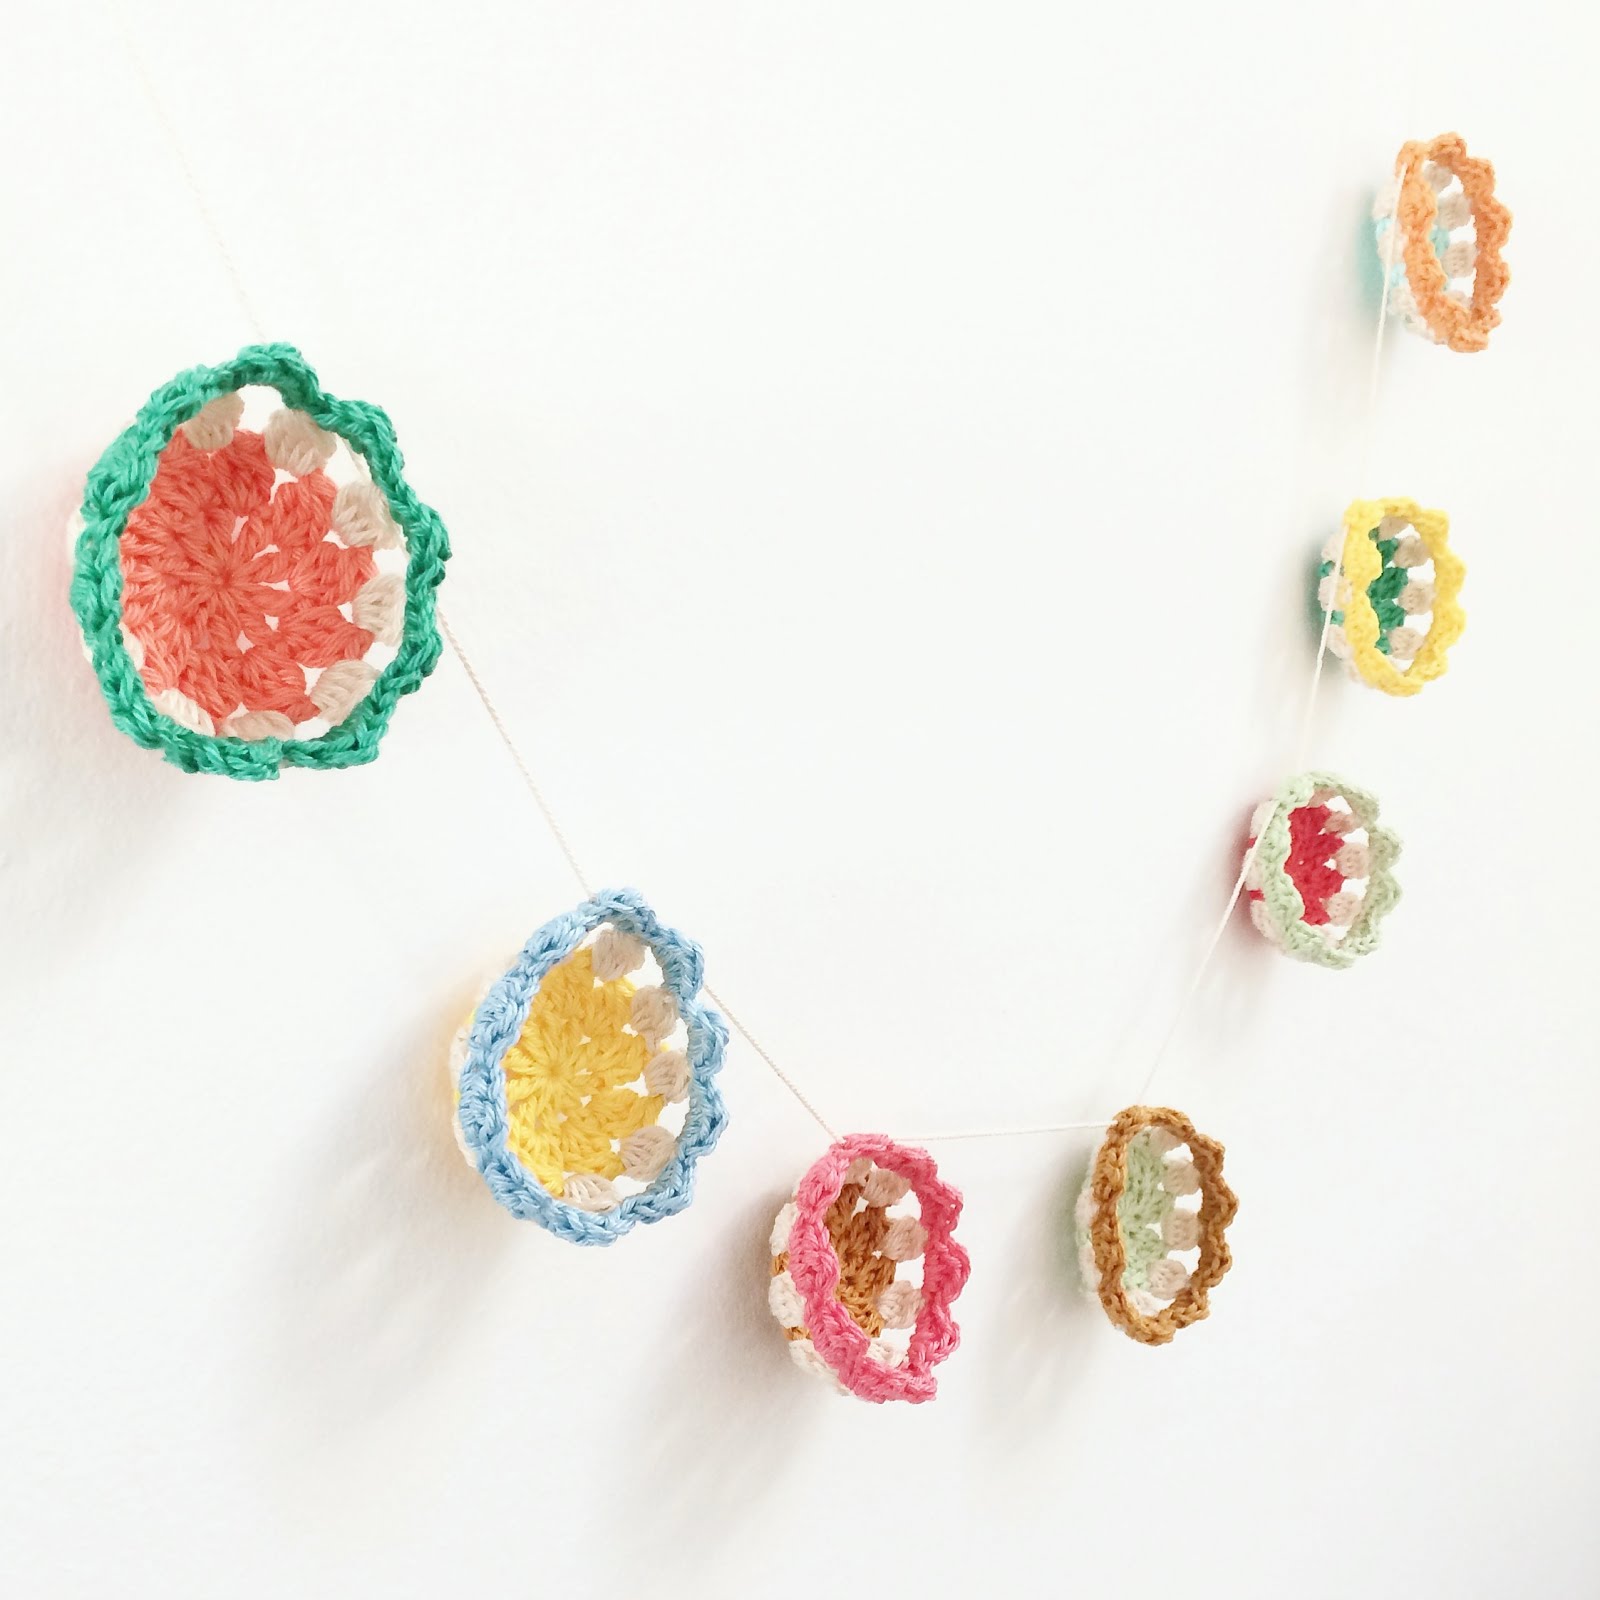 Annemarie's Haakblog: Kawaii Crochet